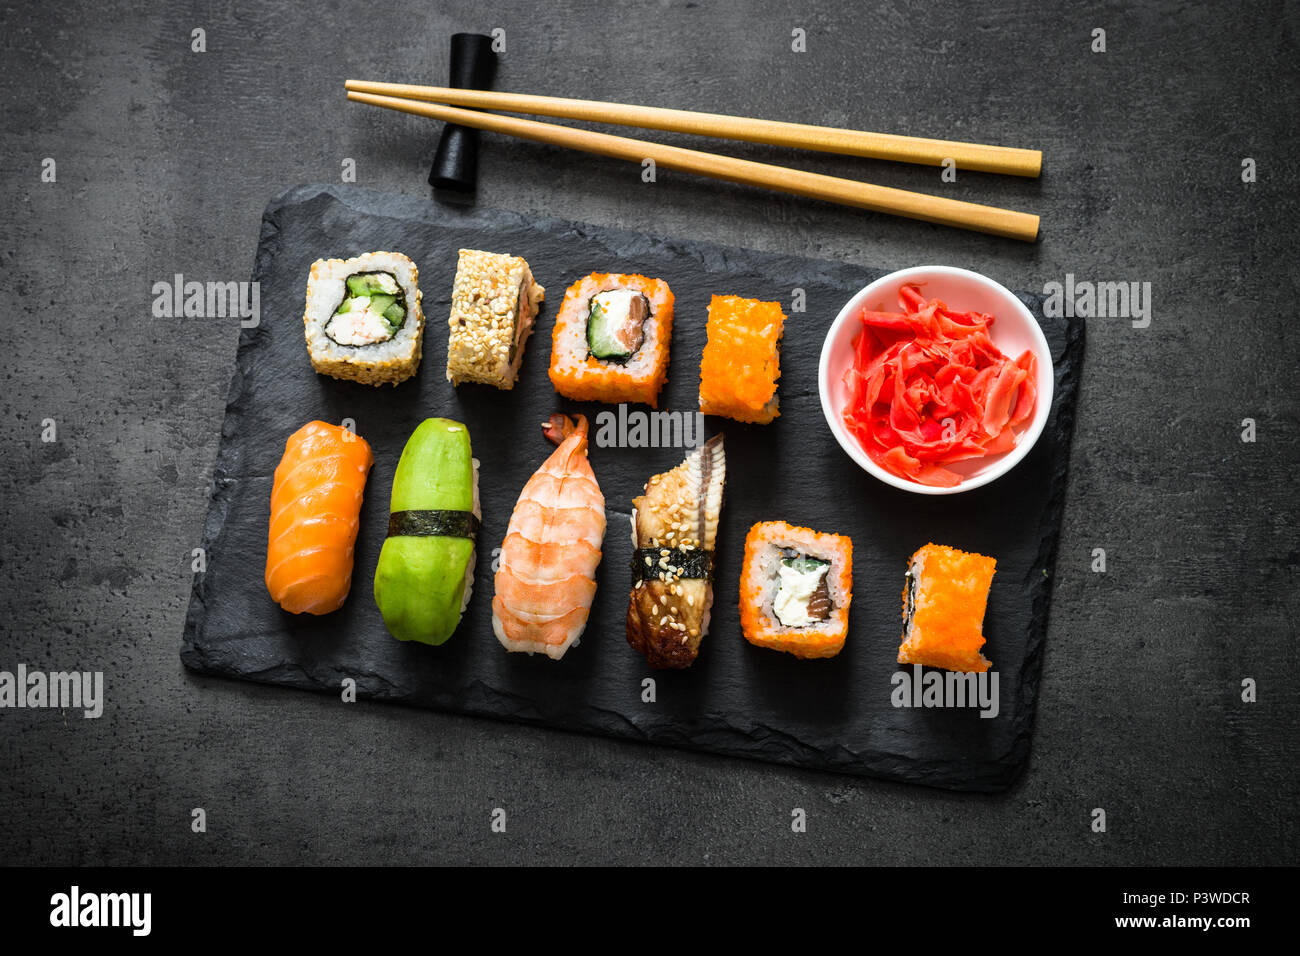 Sushi et sushi roll set sur table en pierre noire vue d'en haut. Cuisine asiatique traditionnelle. Banque D'Images